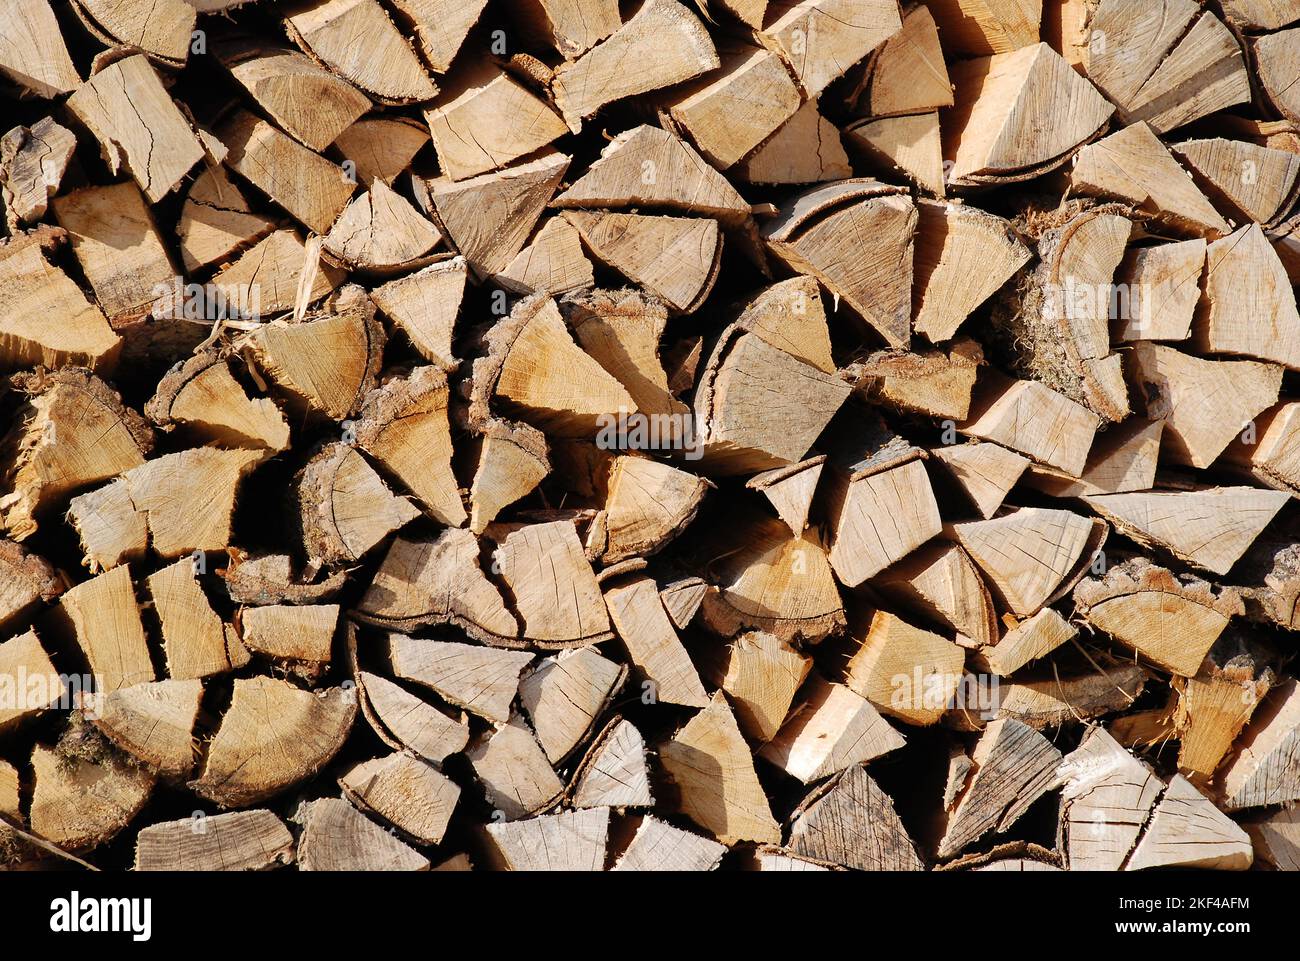 Gestapeltes Brennholz, Kaminholz, Vorrat für den Winter bei steigenden Energiepreisen, Kaminfeuer, Banque D'Images